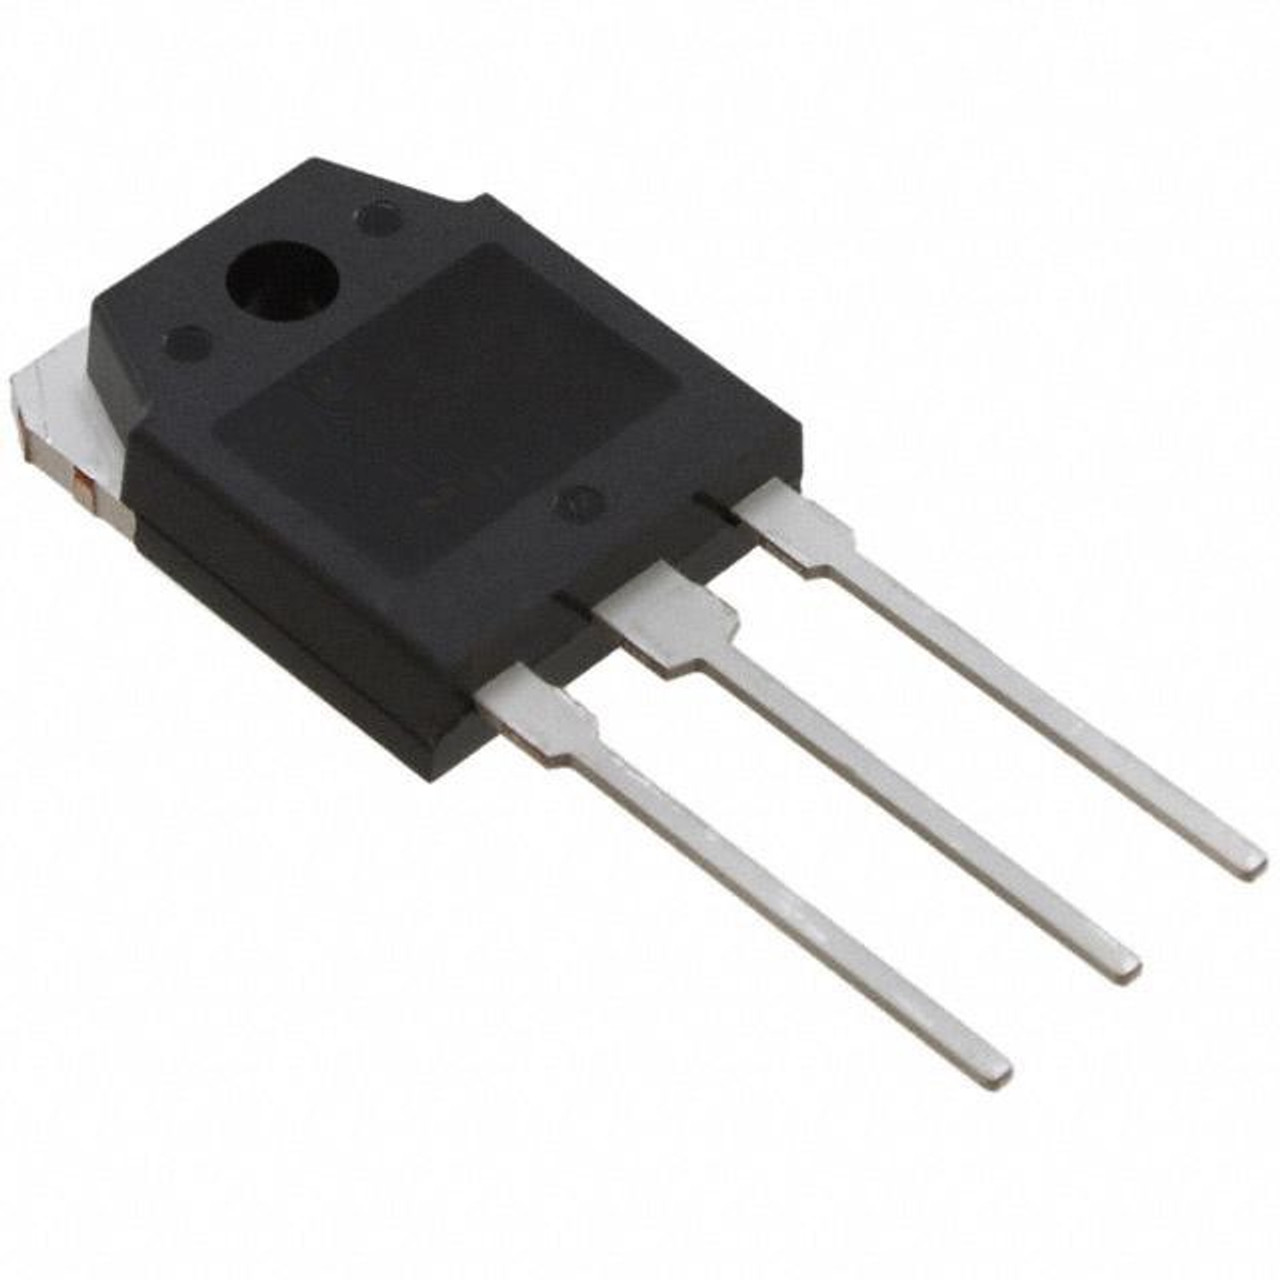 K1170 : 2SK1170 ; Transistor N-MOSFET 500V 20A 120W 0.2Ω, TO-3P GDS